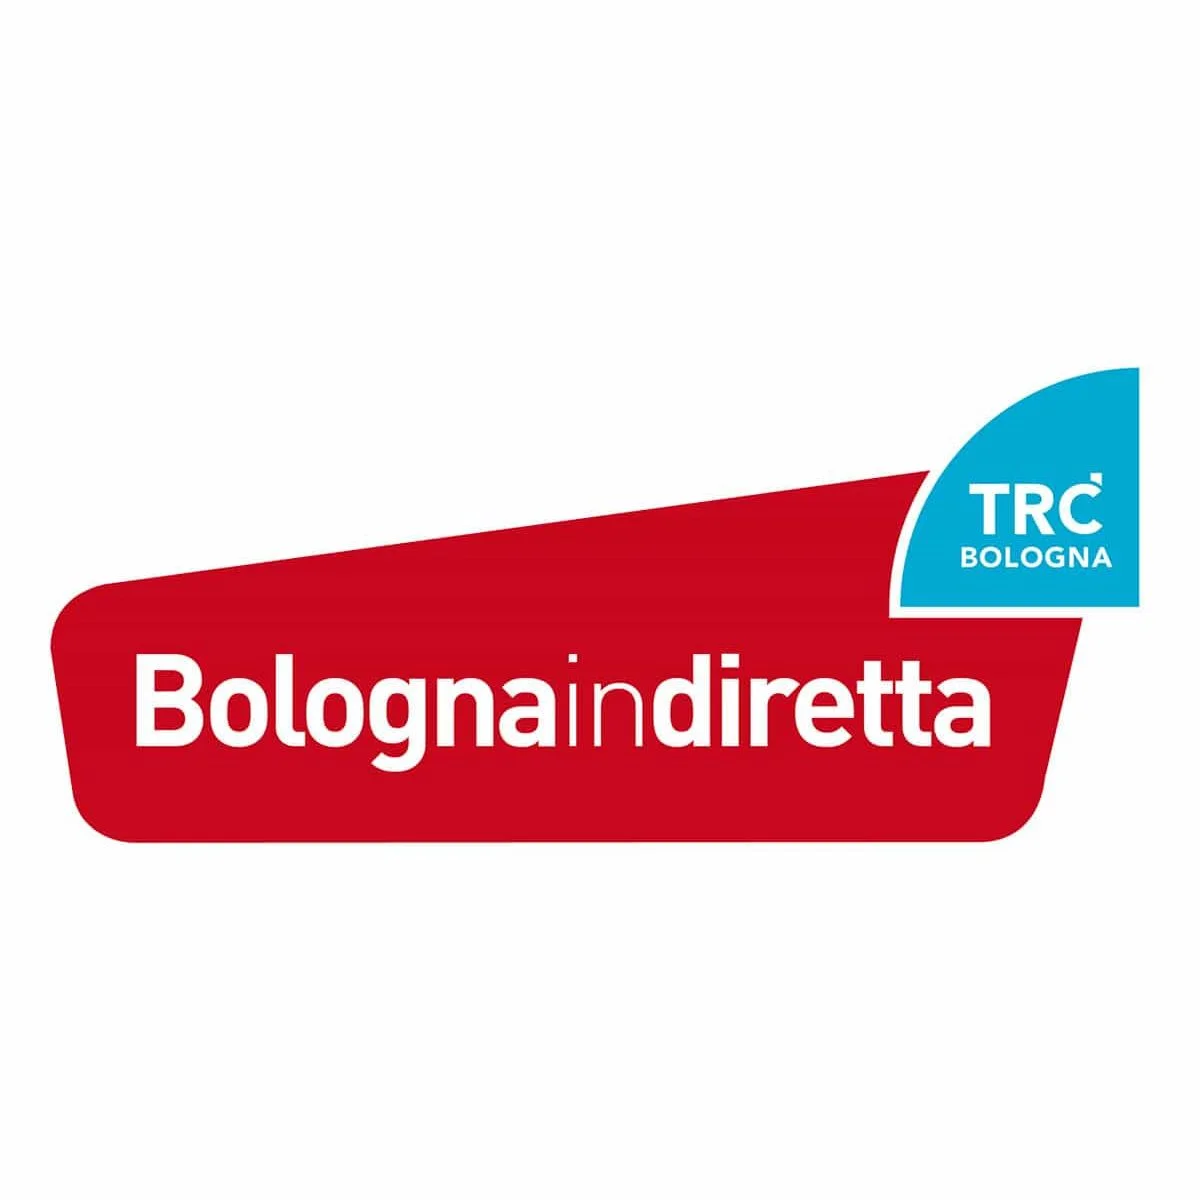 TRC Bologna